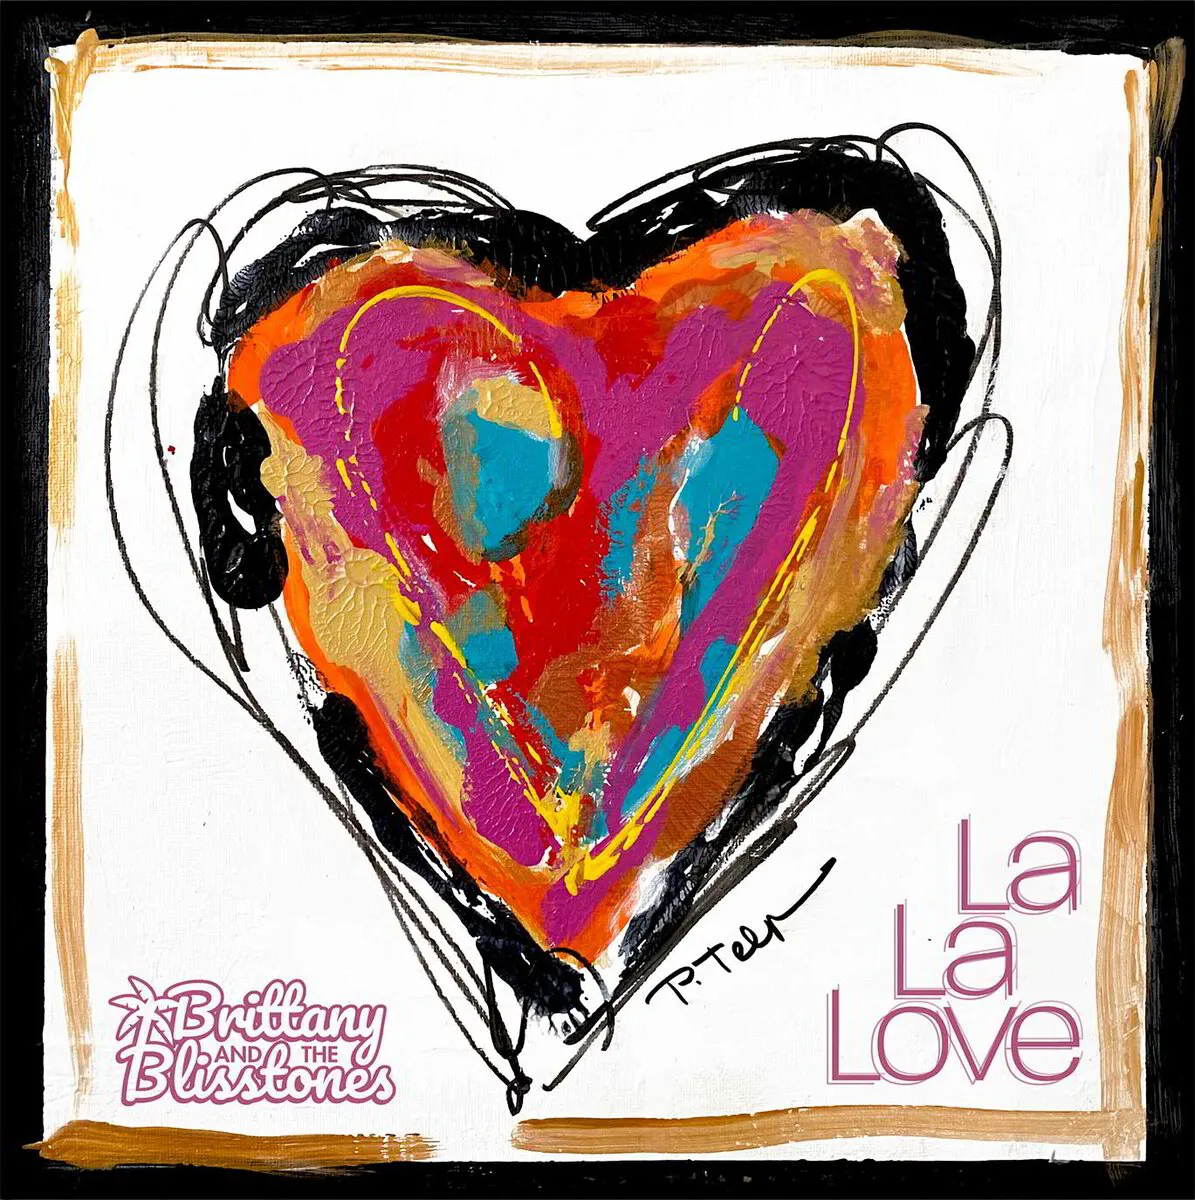 La La Love CD